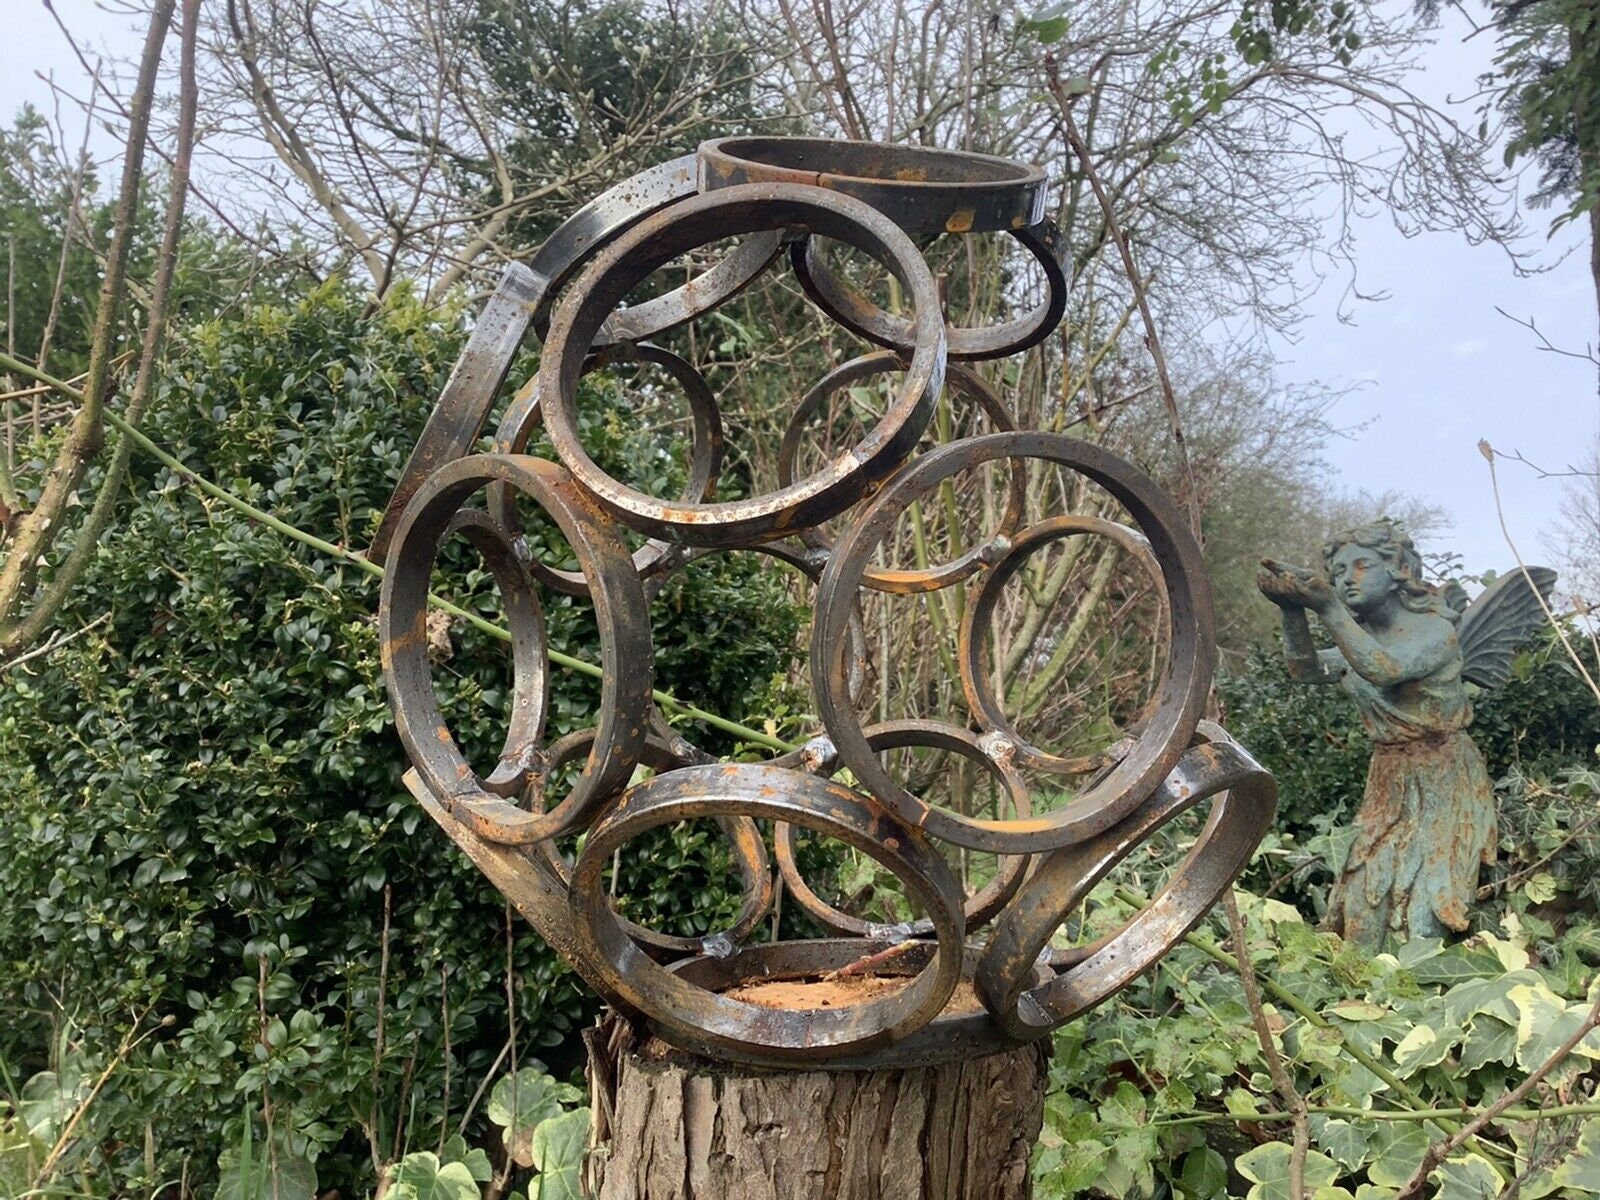 Ornement rouillé en métal de sculpture d'orbe de sphère ouverte d'art  moderne de jardin -  France